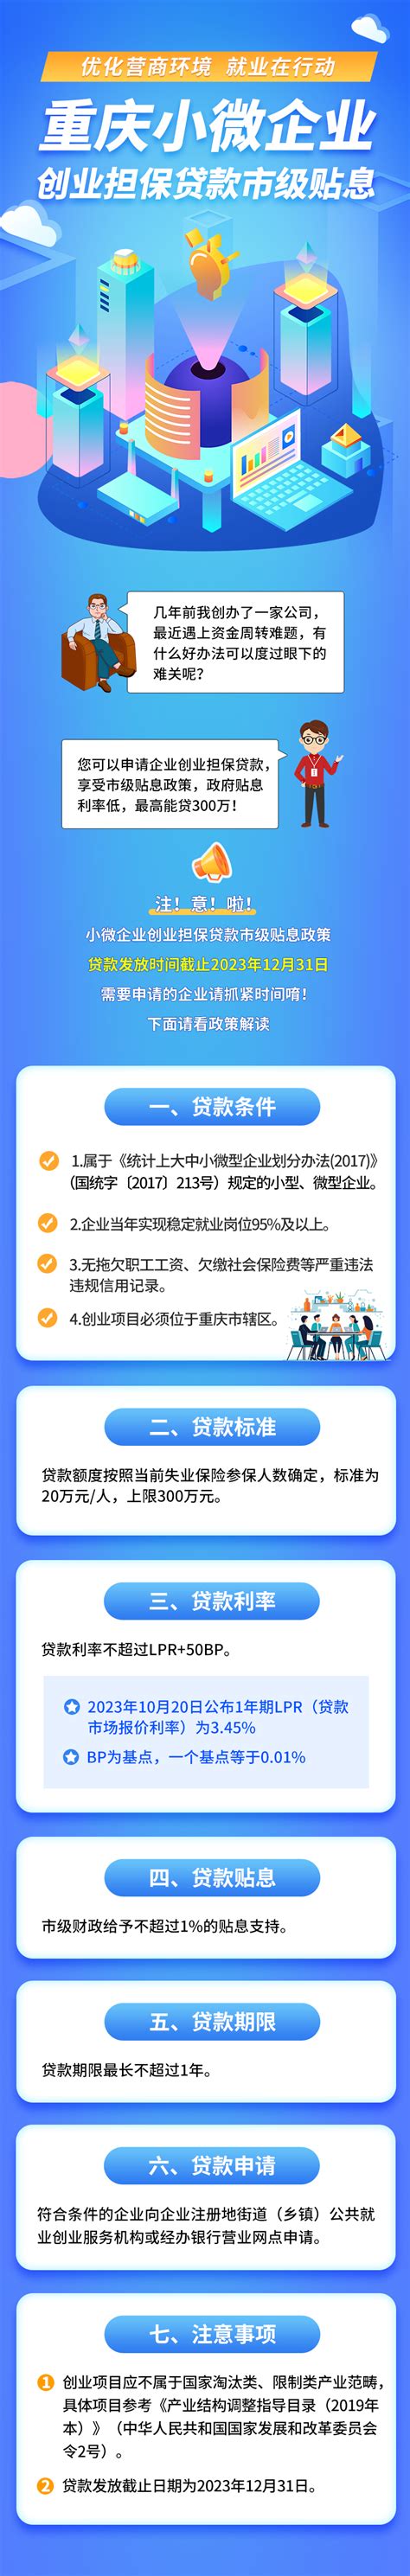 一图读懂 | @重庆小微企业，创业担保贷款市级贴息政策了解一下